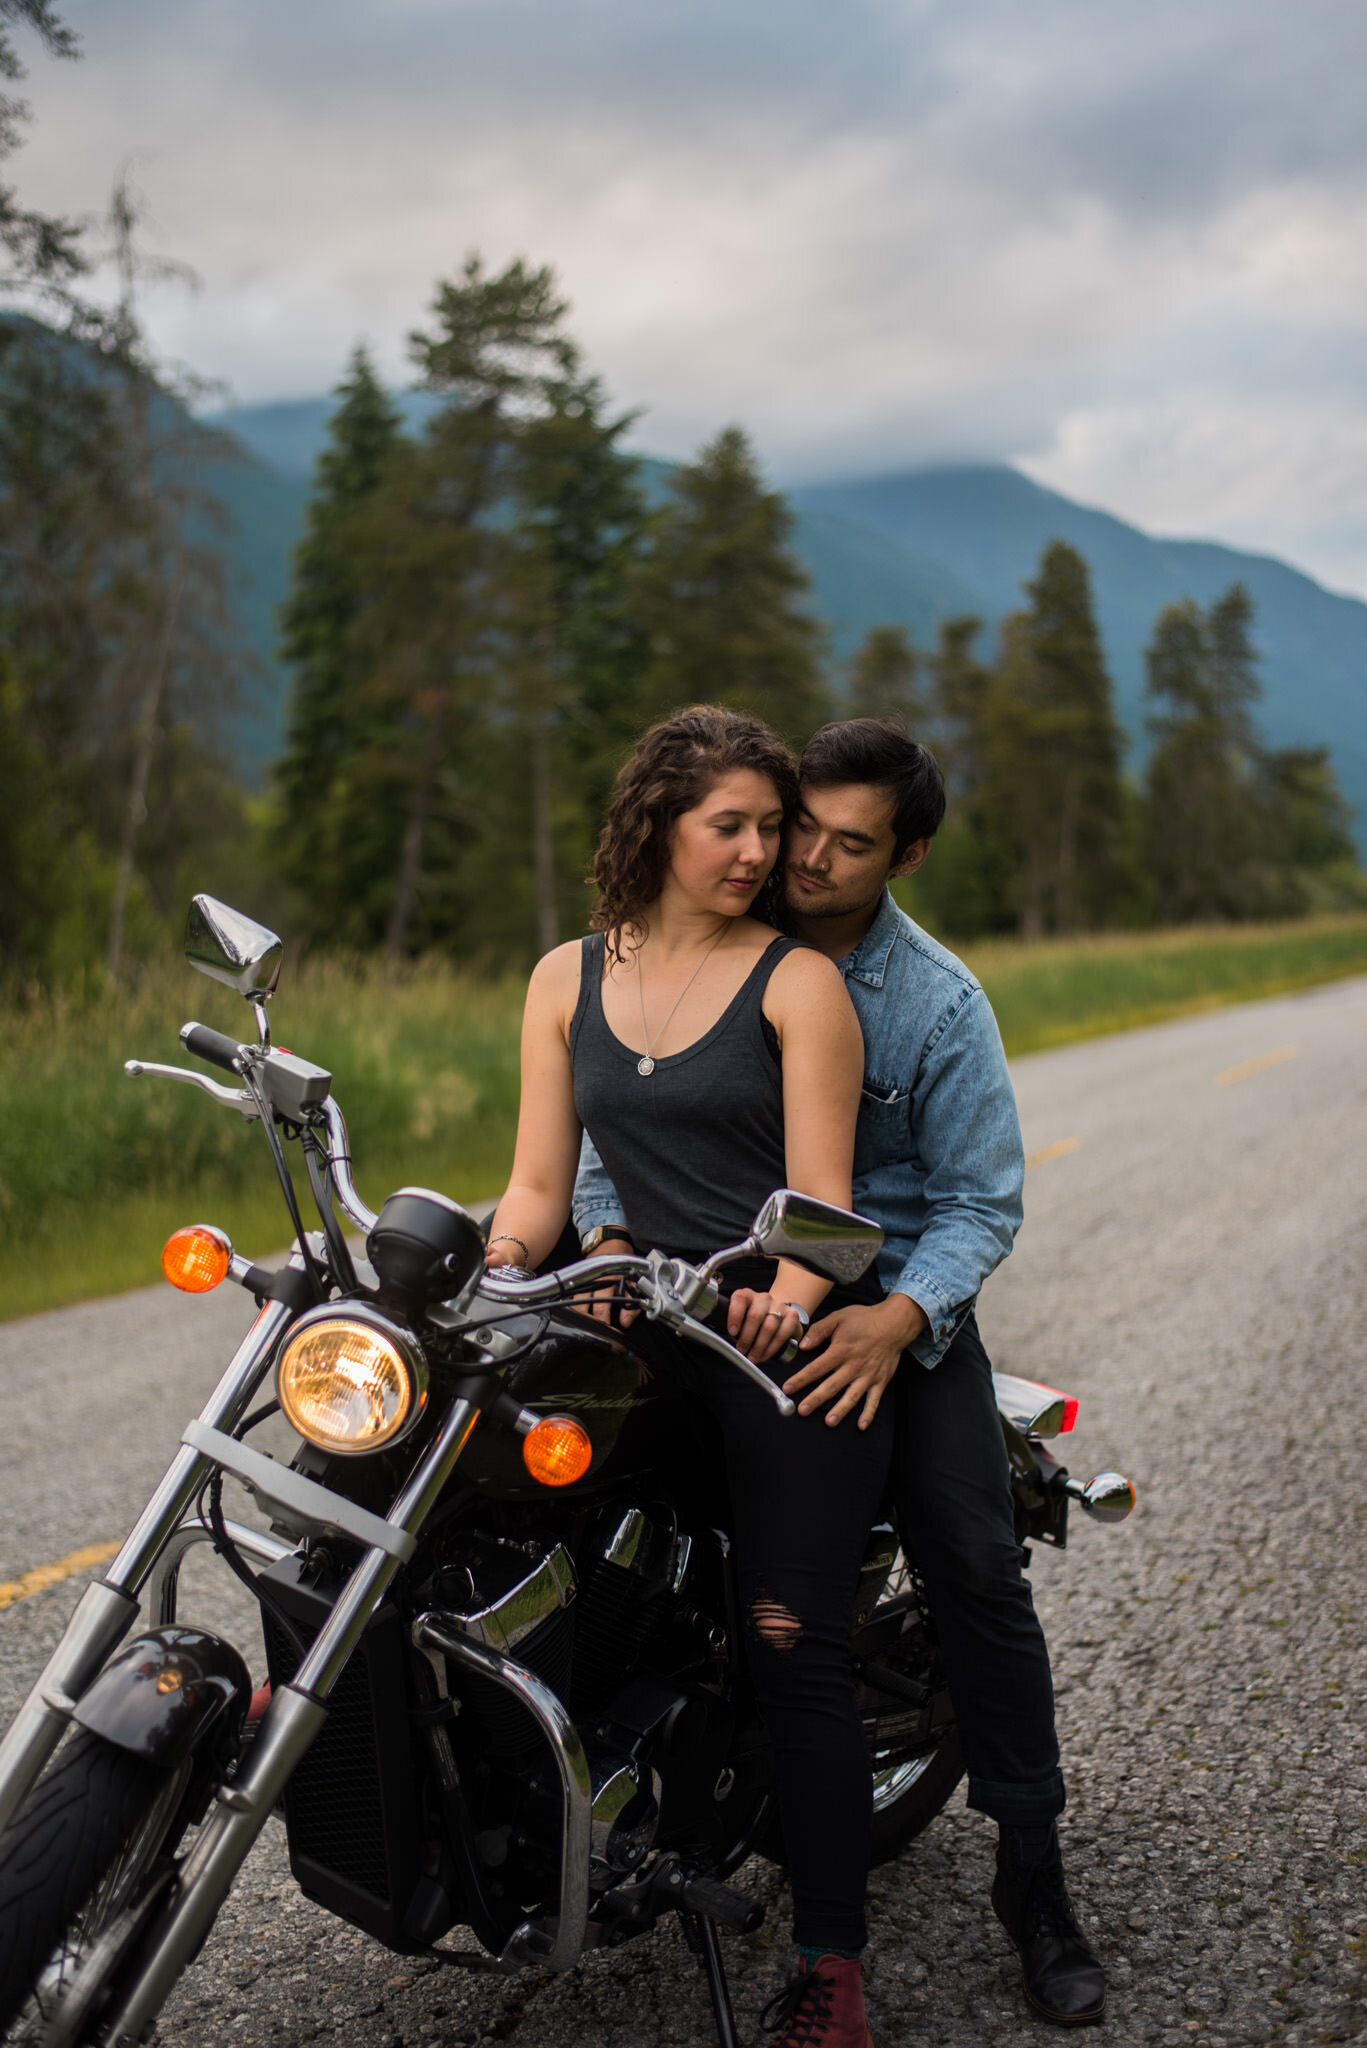 Motorcycle Adventure | Motorcycle couple photography, Biker photoshoot, Bike  photoshoot